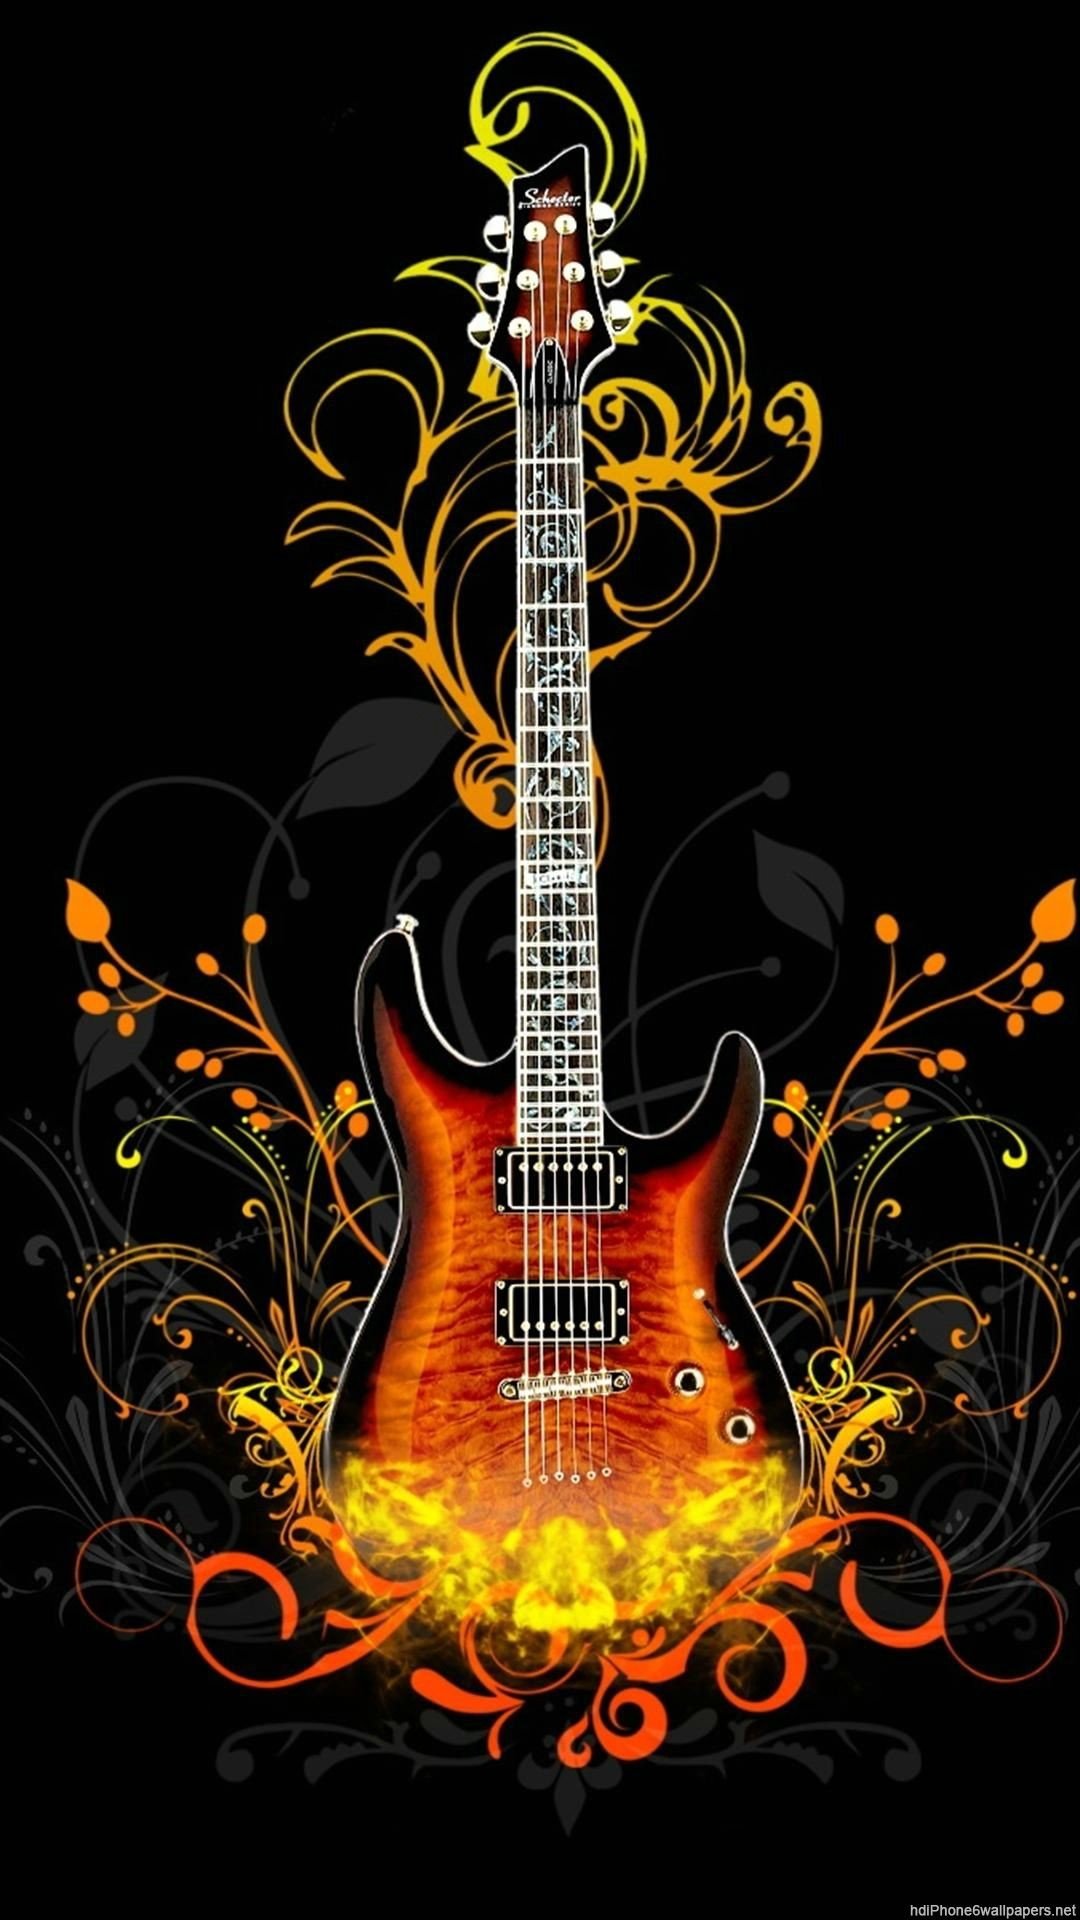 1080x 3D Guitar Wallpaper iPhone HD Wallpaper Vertical